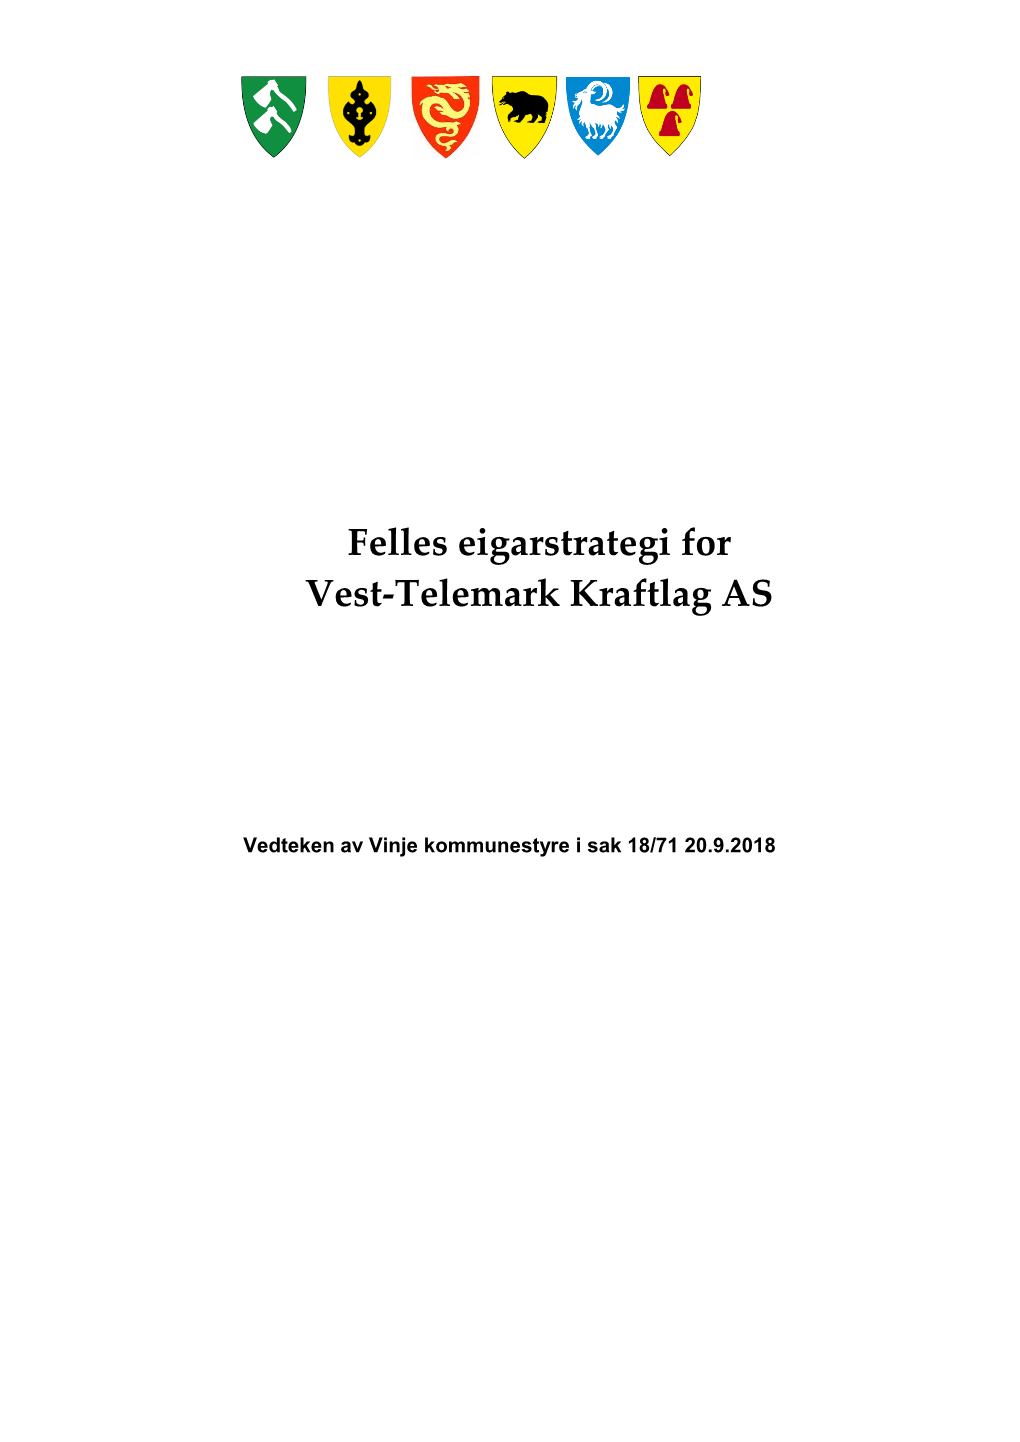 Felles Eigarstrategi for Vest-Telemark Kraftlag AS